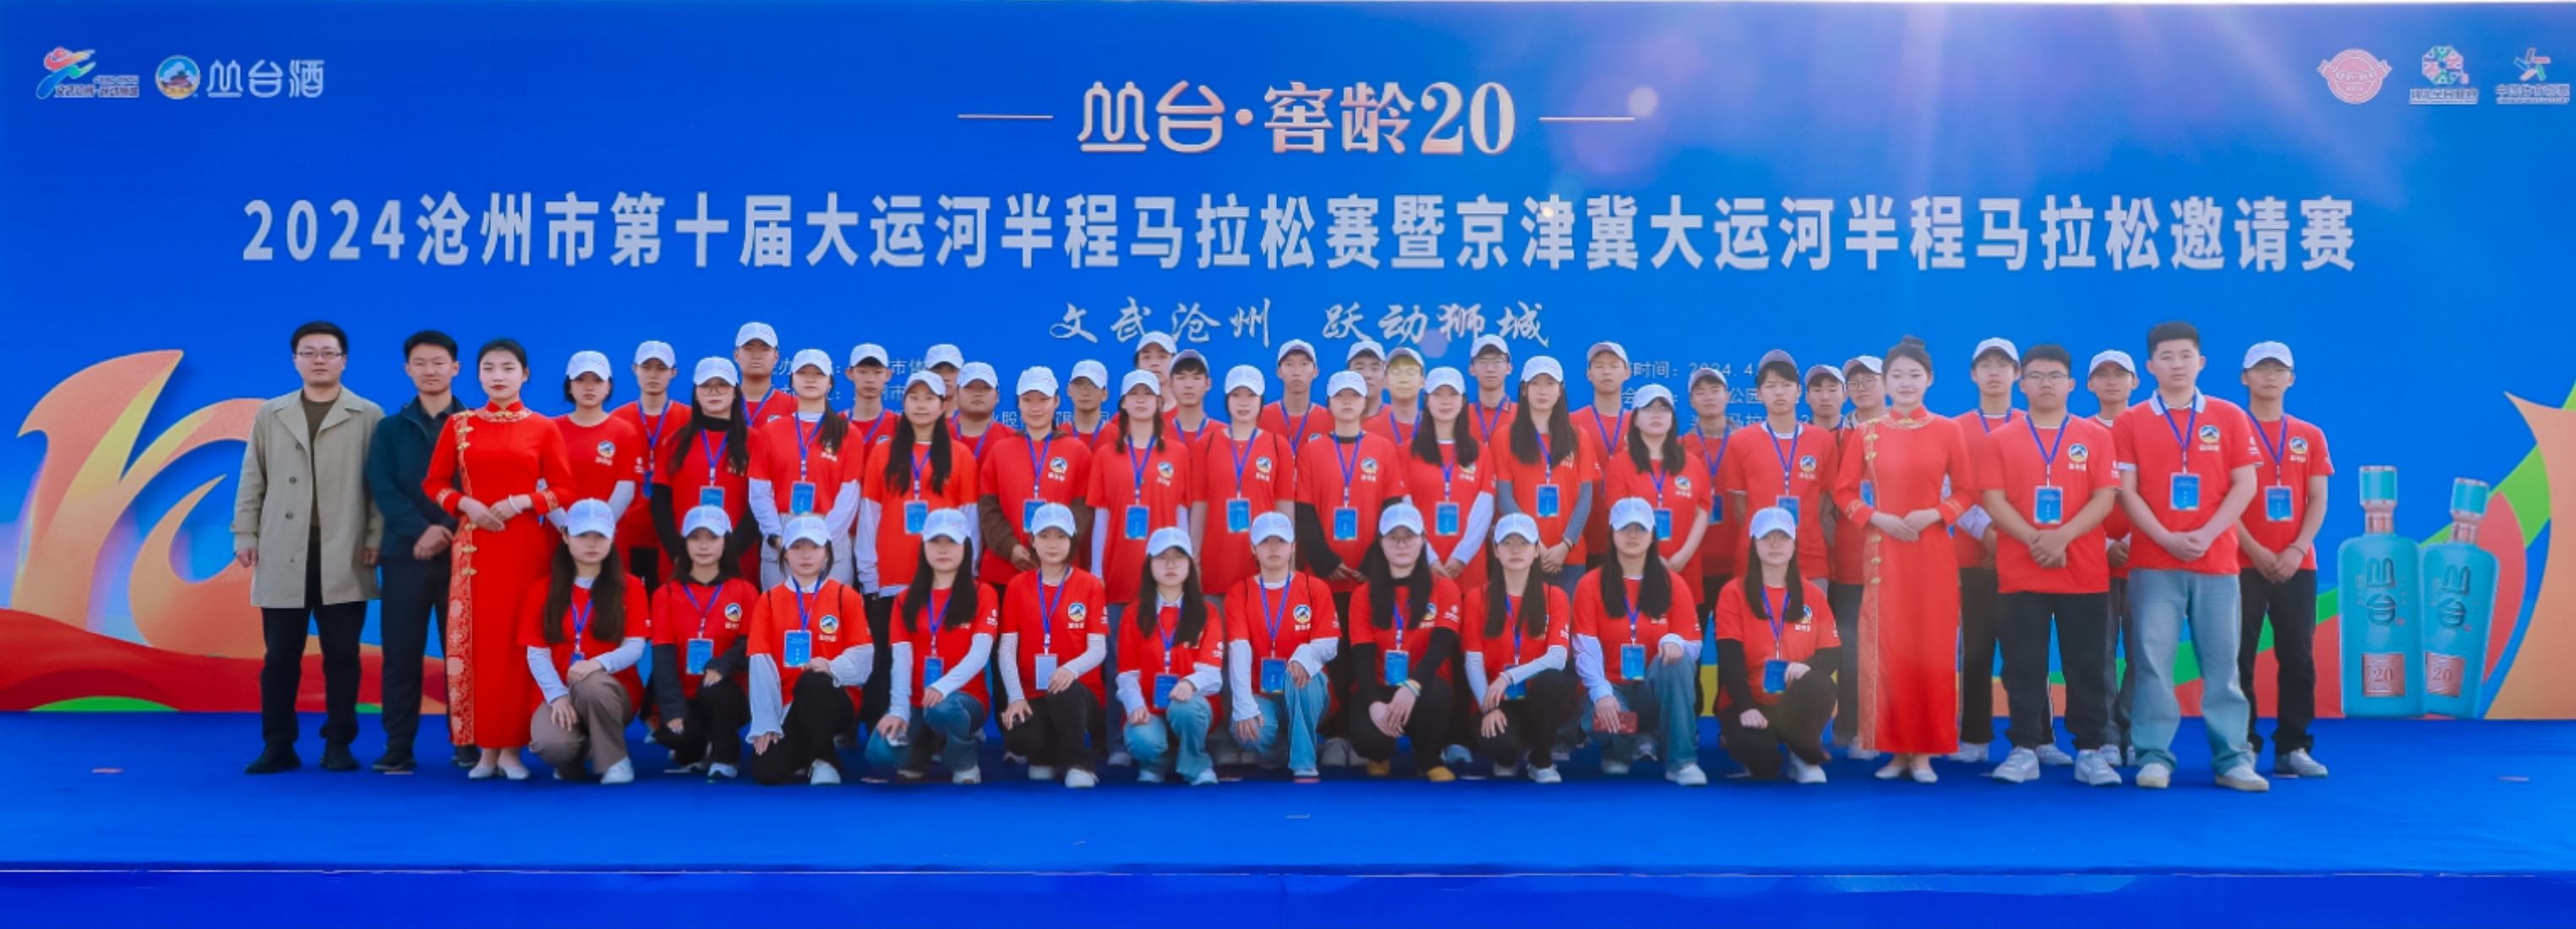 青春助力马拉松  优发88青年展风采  ——我院志愿者圆满完成沧州市第十届 大运河马拉松赛志愿服务工作